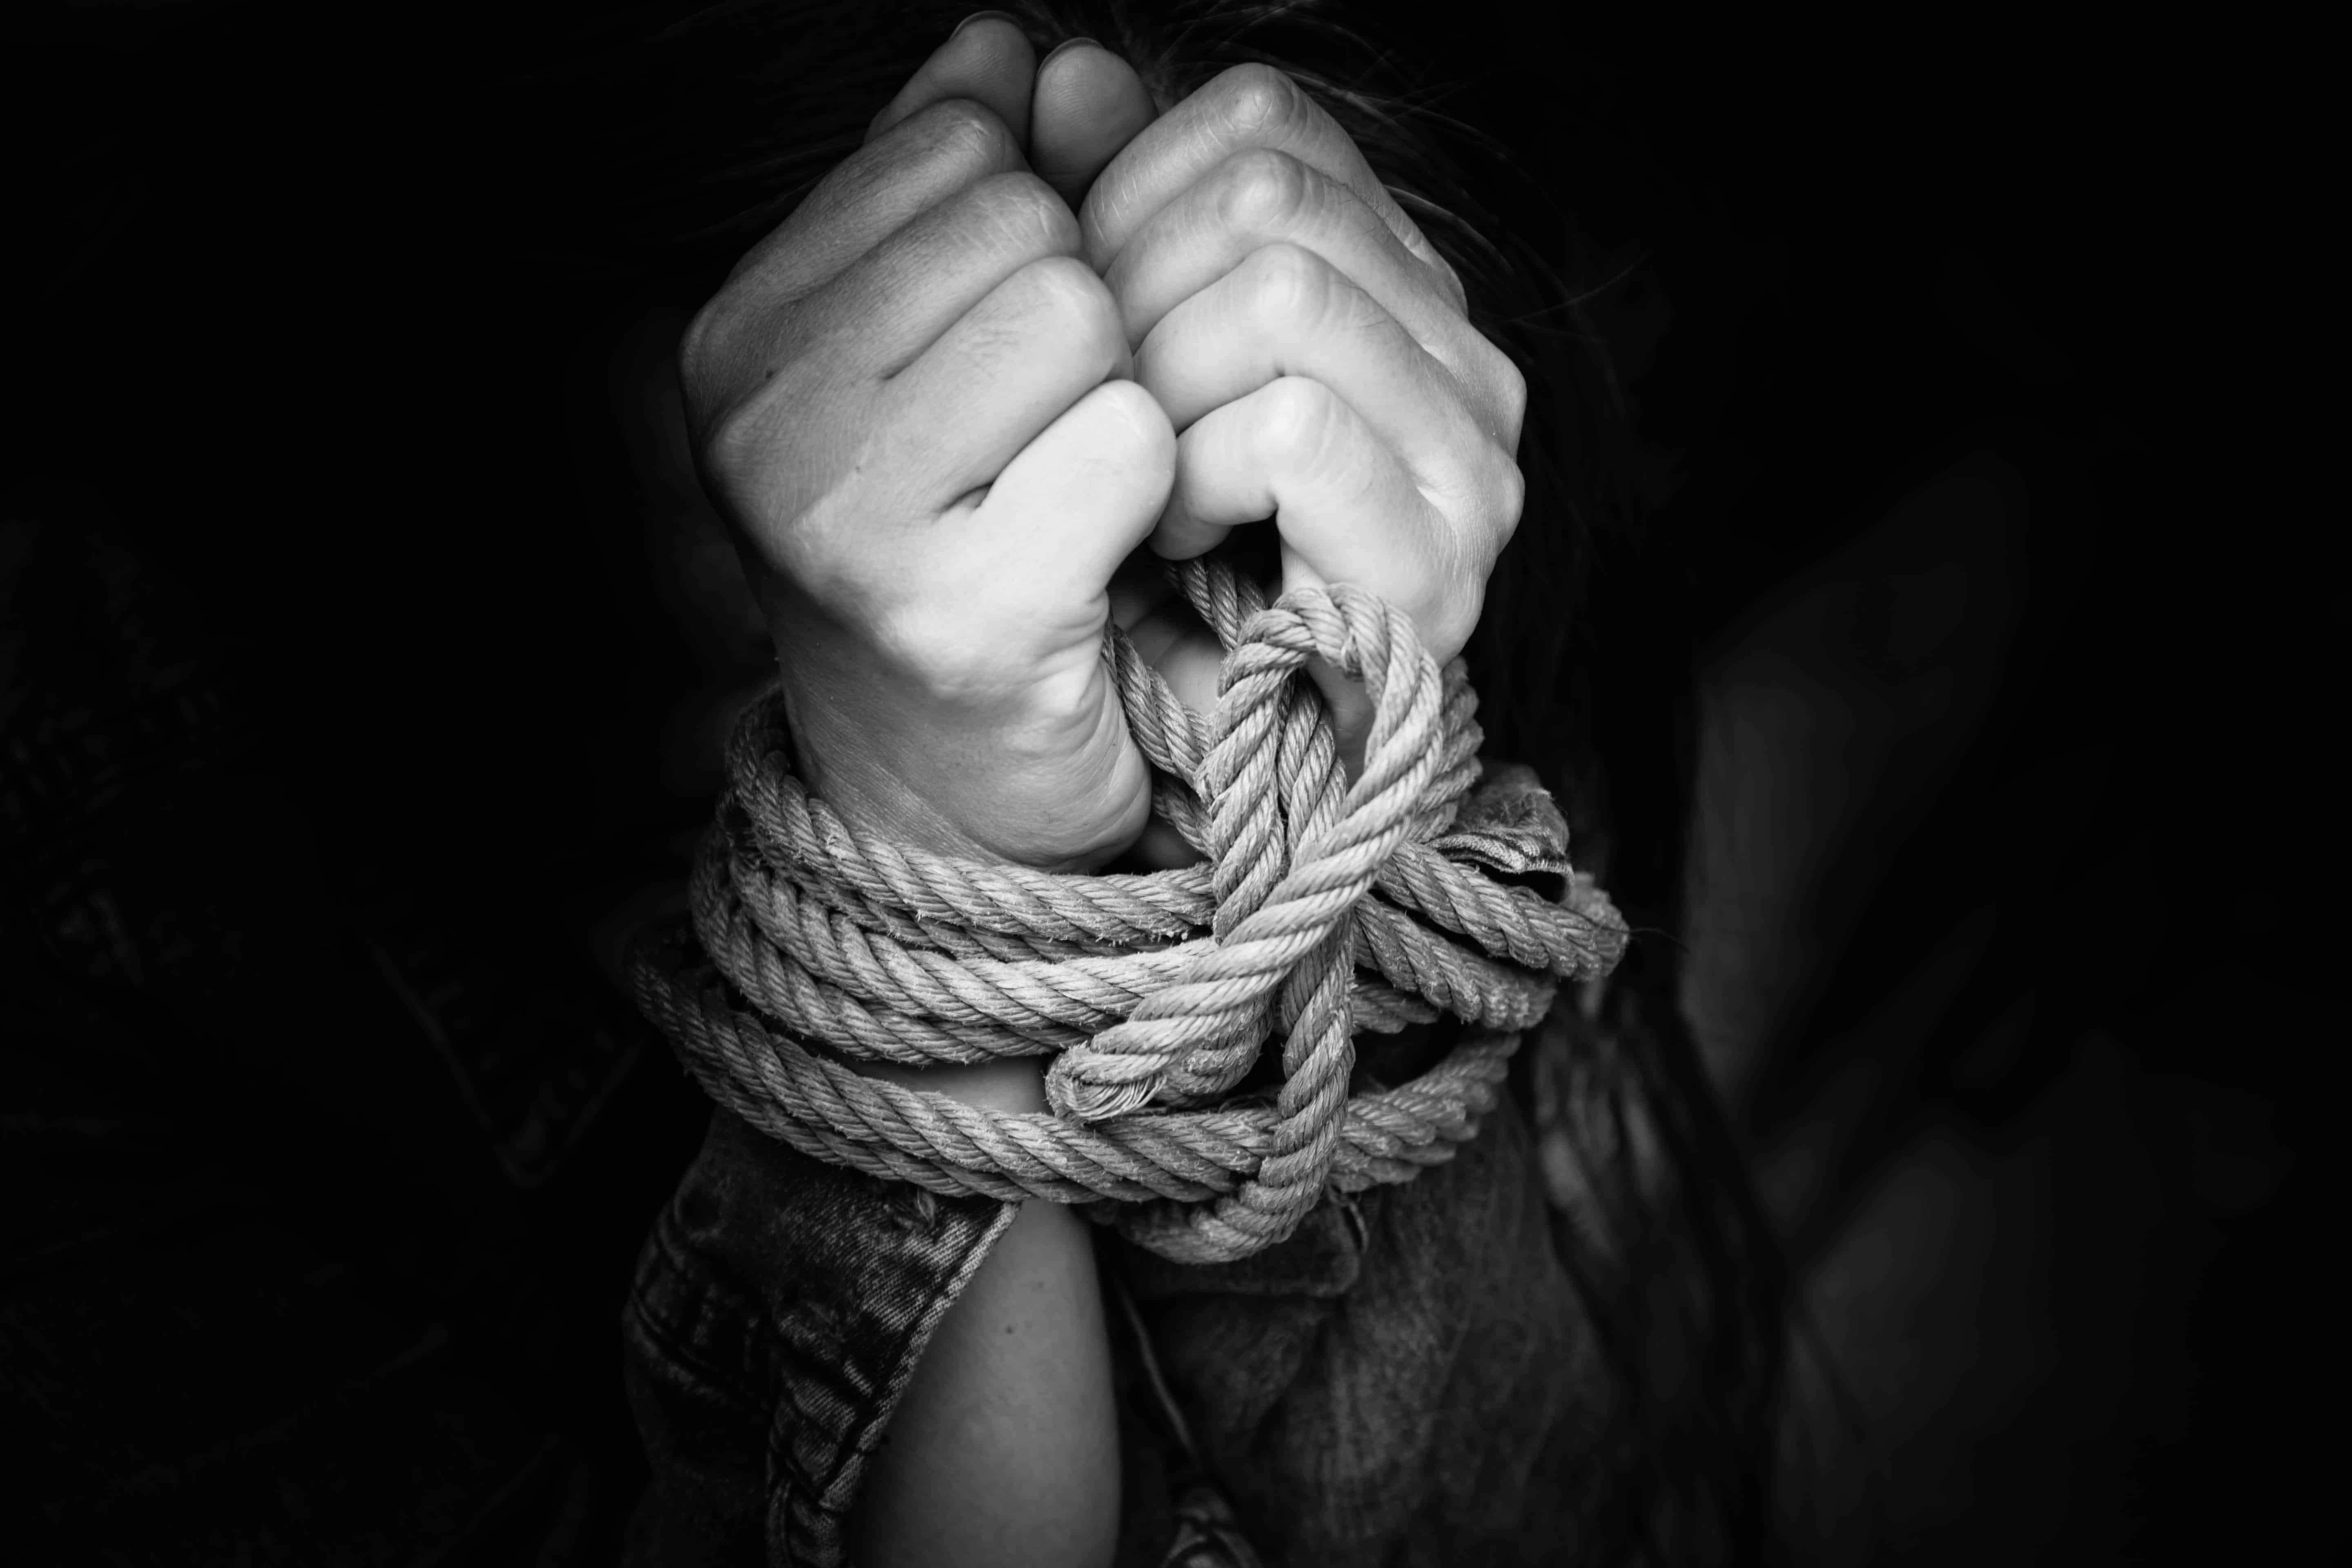 Human Trafficking Awareness & Training